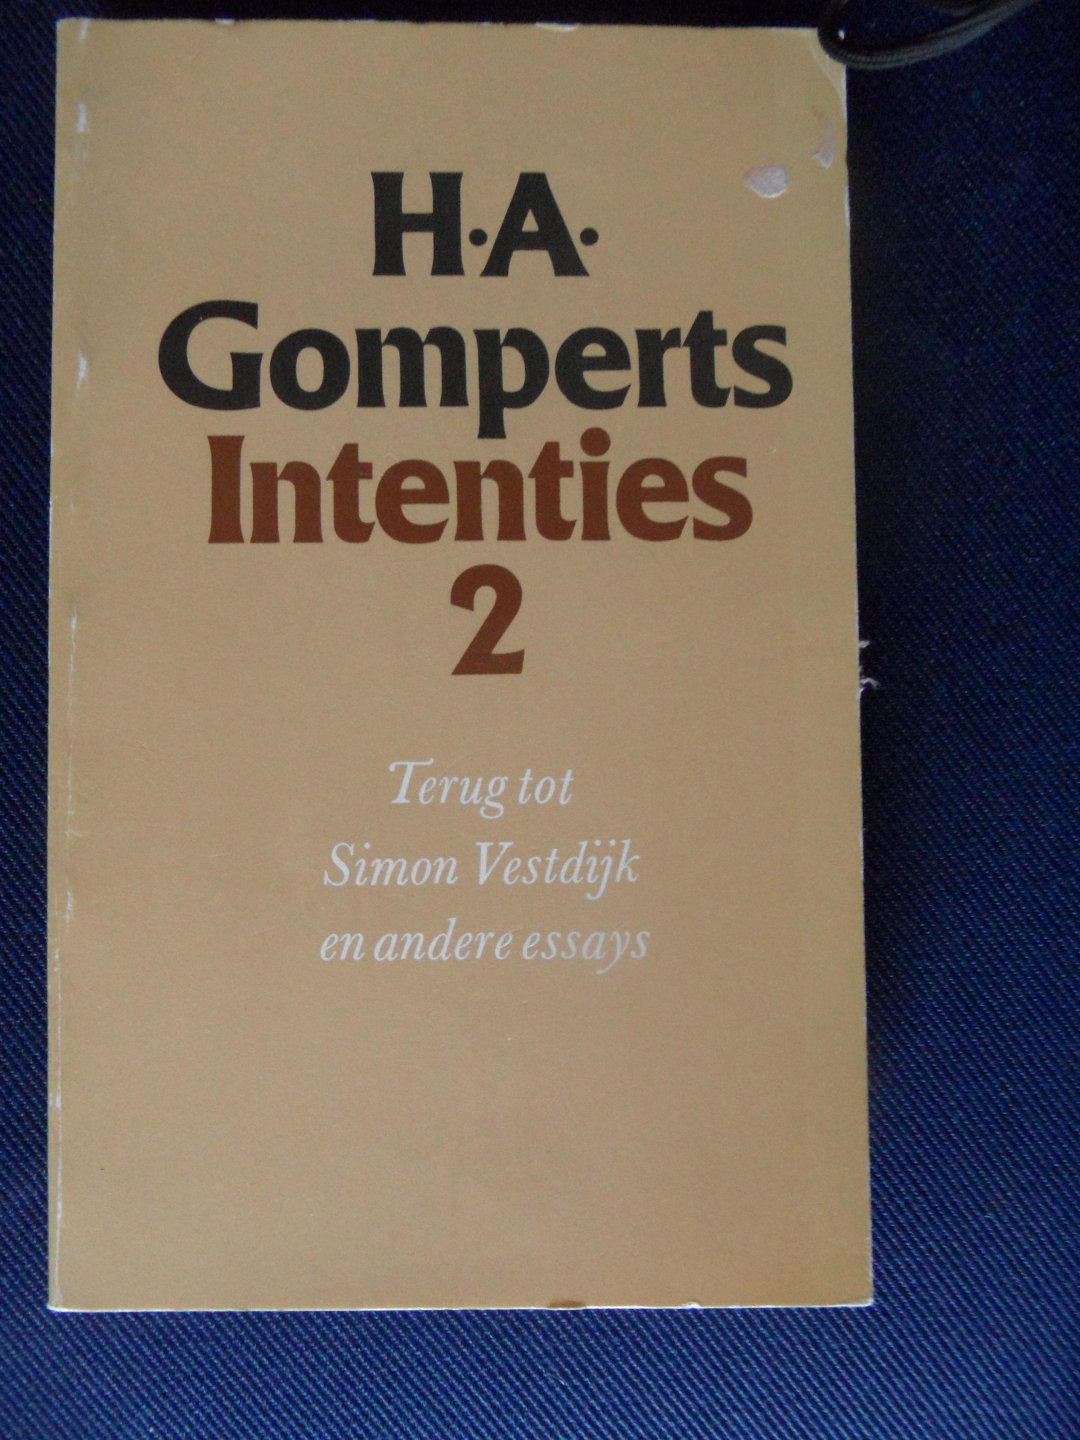 Gomperts, H.A. - Intenties 1 en 2. Kritieken en over kritiek